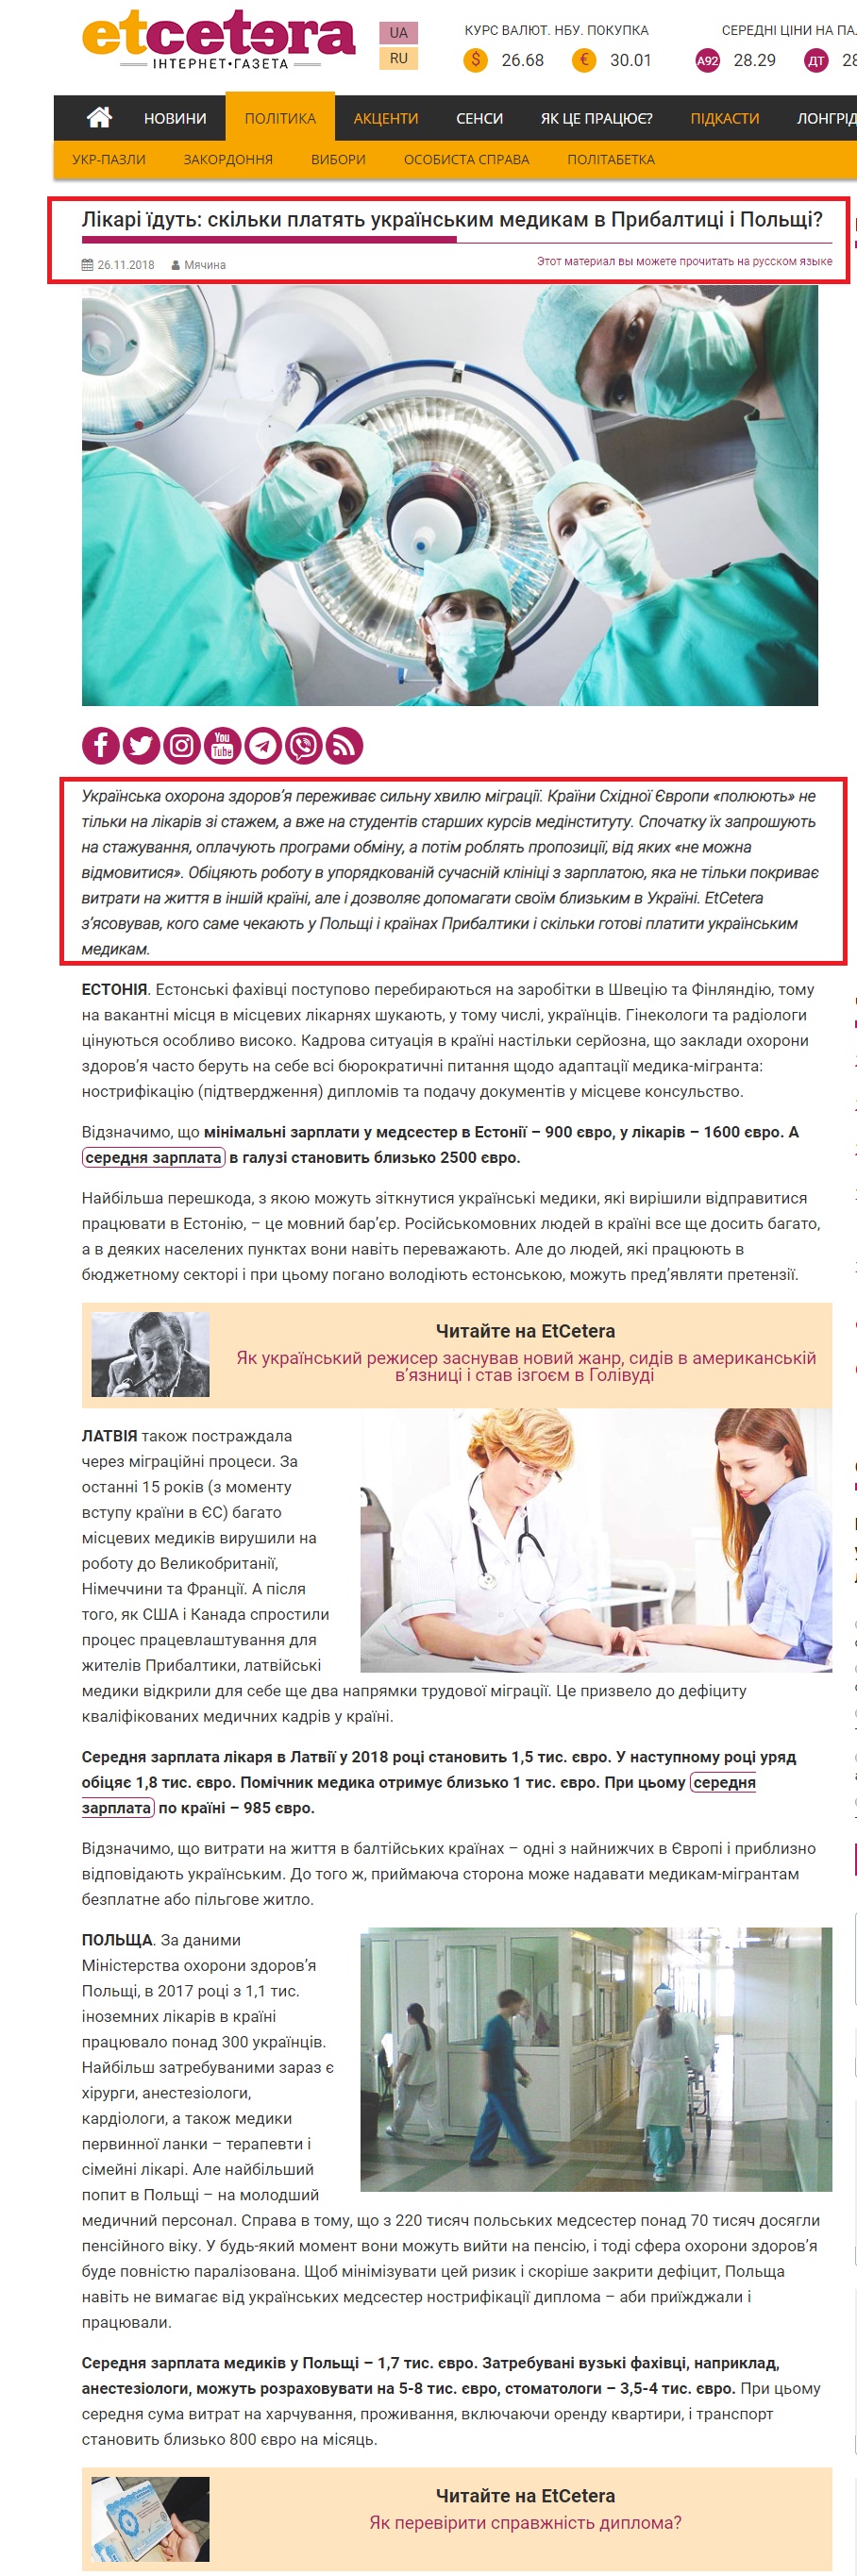 https://uk.etcetera.media/likari-yidut-skilki-platyat-ukrayinskim-medikam-v-pribaltitsi-i-polshhi.html